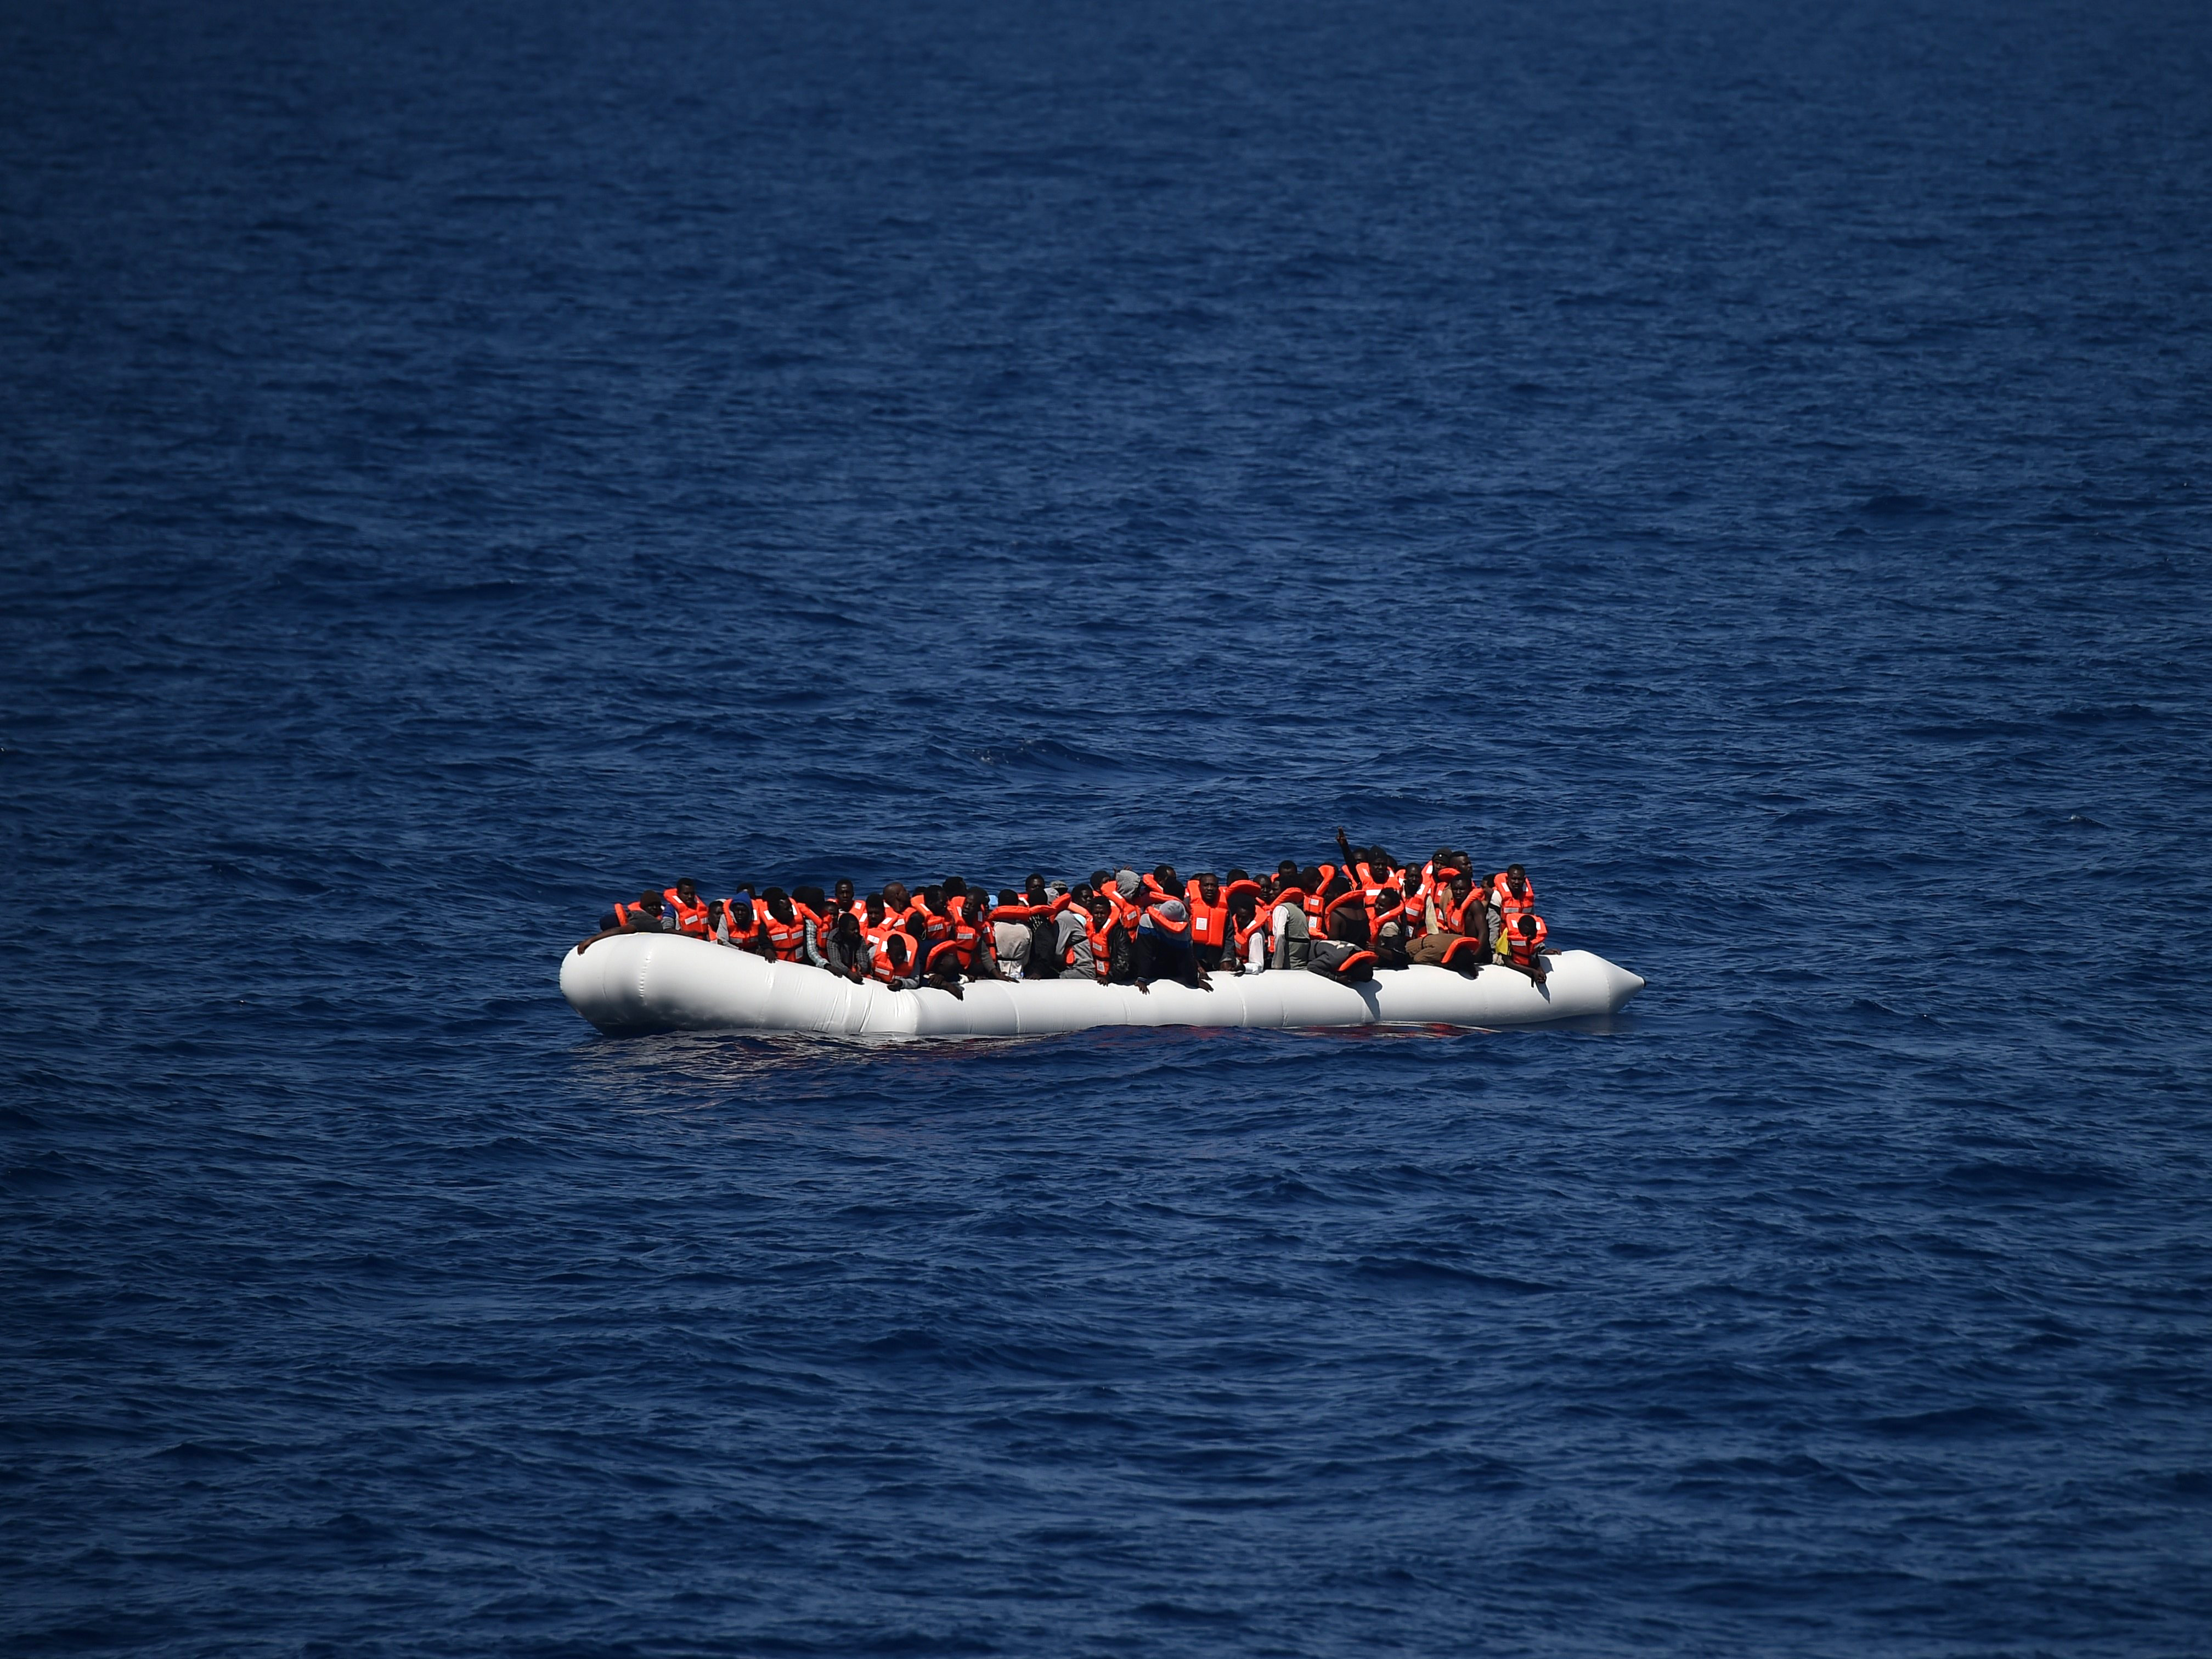 Flüchtlinge springen ins Wasser – Libysche Küstenwache hindert NGO-Schiff an Rettungseinsatz